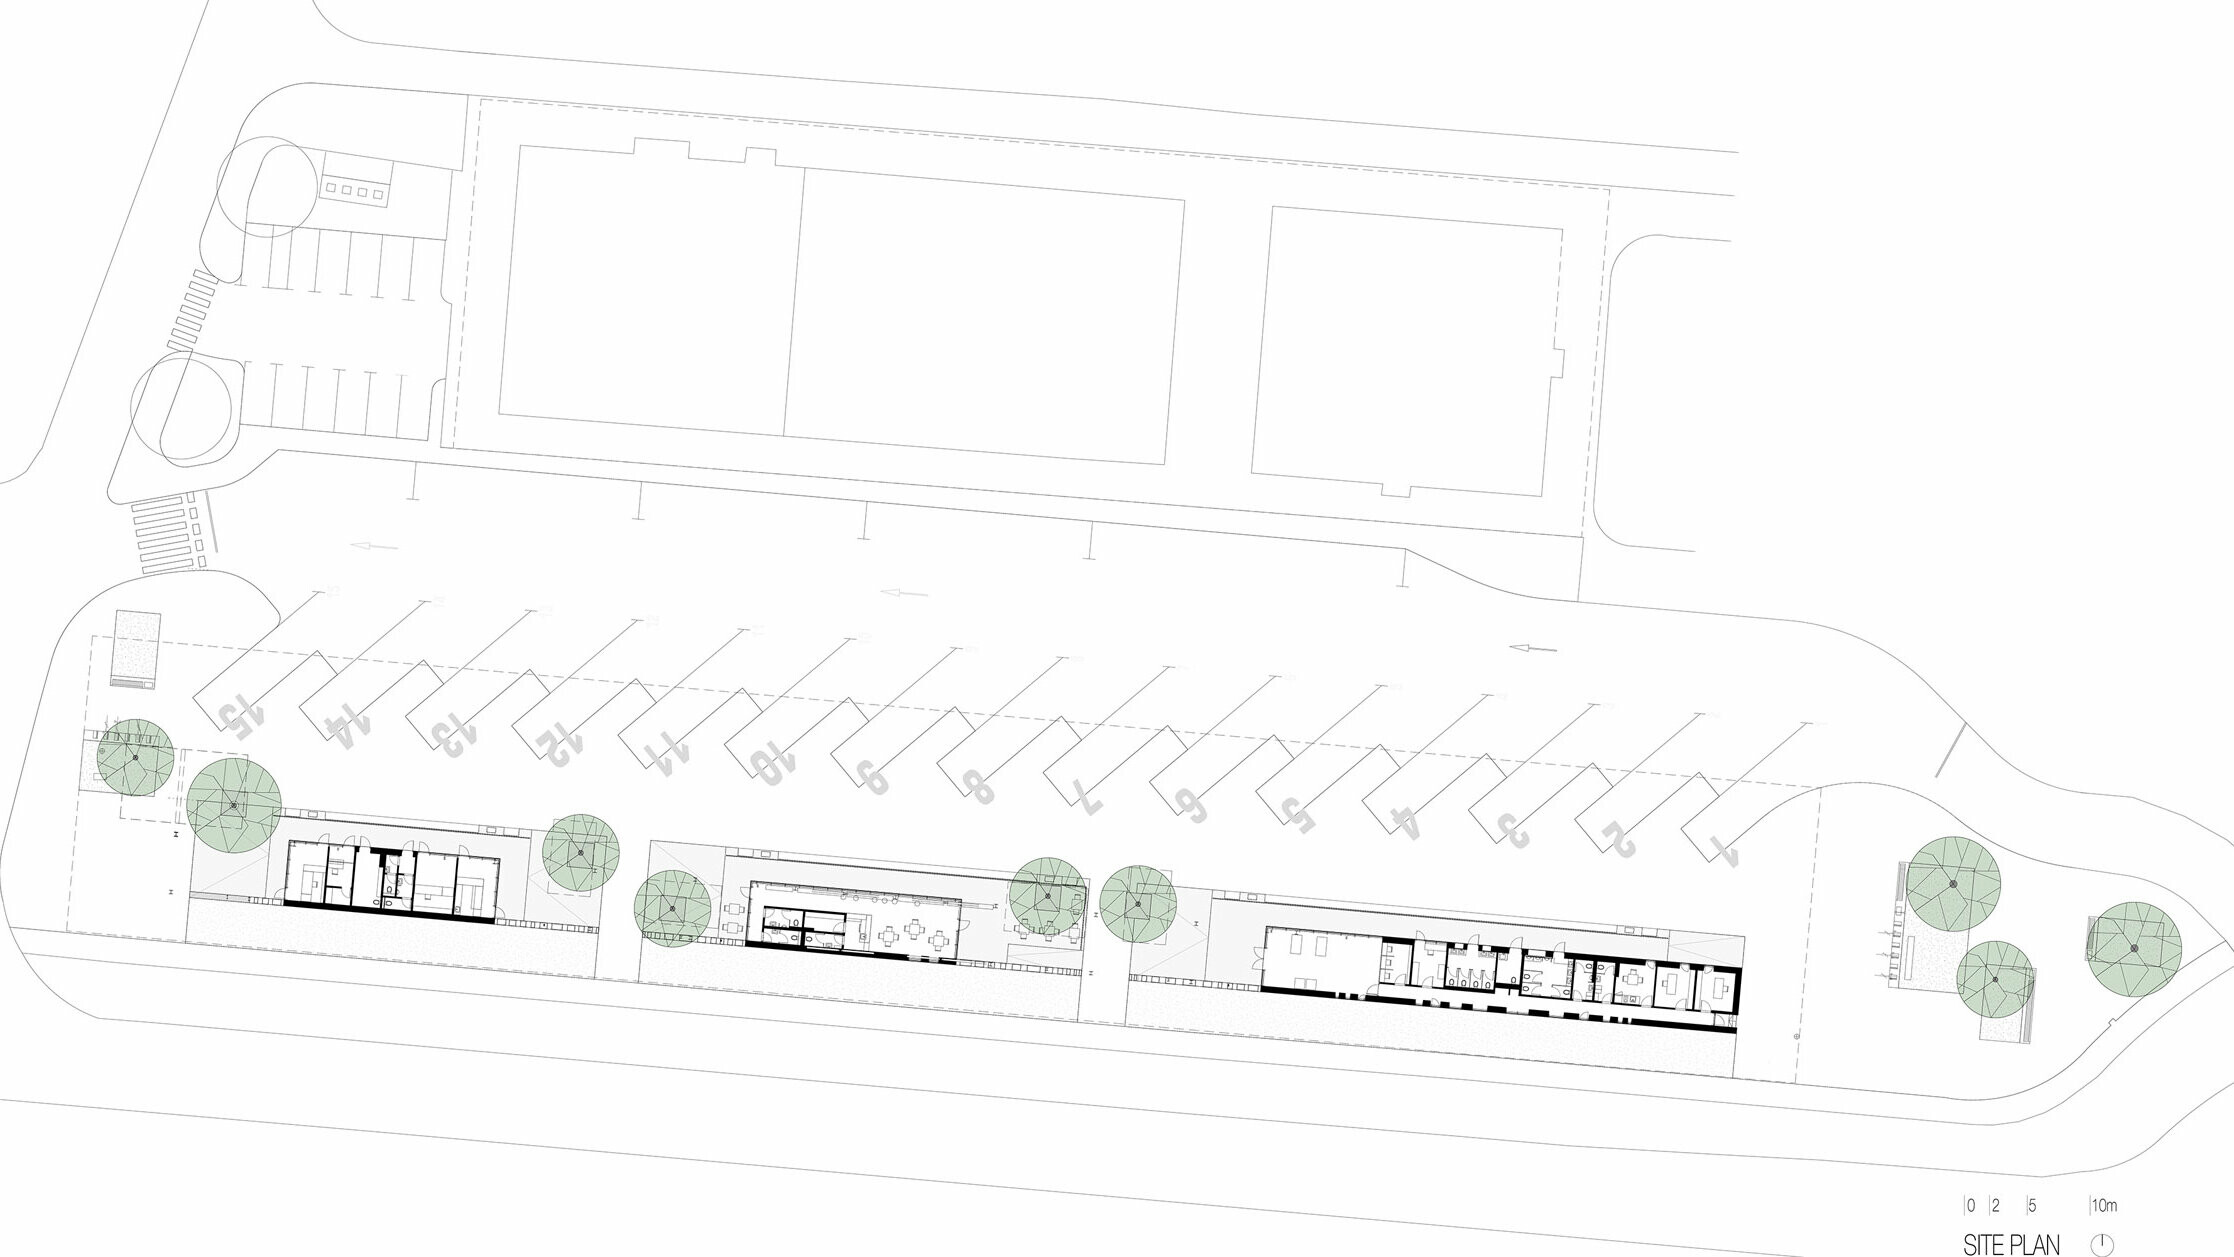 Der Lageplan zeigt die Übersicht der Bushaltestelle "Autobusni Kolodvor Slavonski Brod" in Kroatien. Die Zeichnung illustriert die Anordnung der Bussteige und Parkplätze sowie die Gebäude und Grünflächen auf dem Gelände. In der Mitte des Plans sind die Gebäude der Haltestelle zu sehen, die durch mehrere Bäume unterbrochen werden. Die Bussteige sind nummeriert und entlang der oberen Seite des Plans angeordnet, während die Parkplätze sich im unteren Bereich befinden. Der Lageplan bietet eine klare Darstellung der gesamten Anlage und ihrer strukturellen Elemente, einschließlich Wege, Parkflächen und Begrünungen.